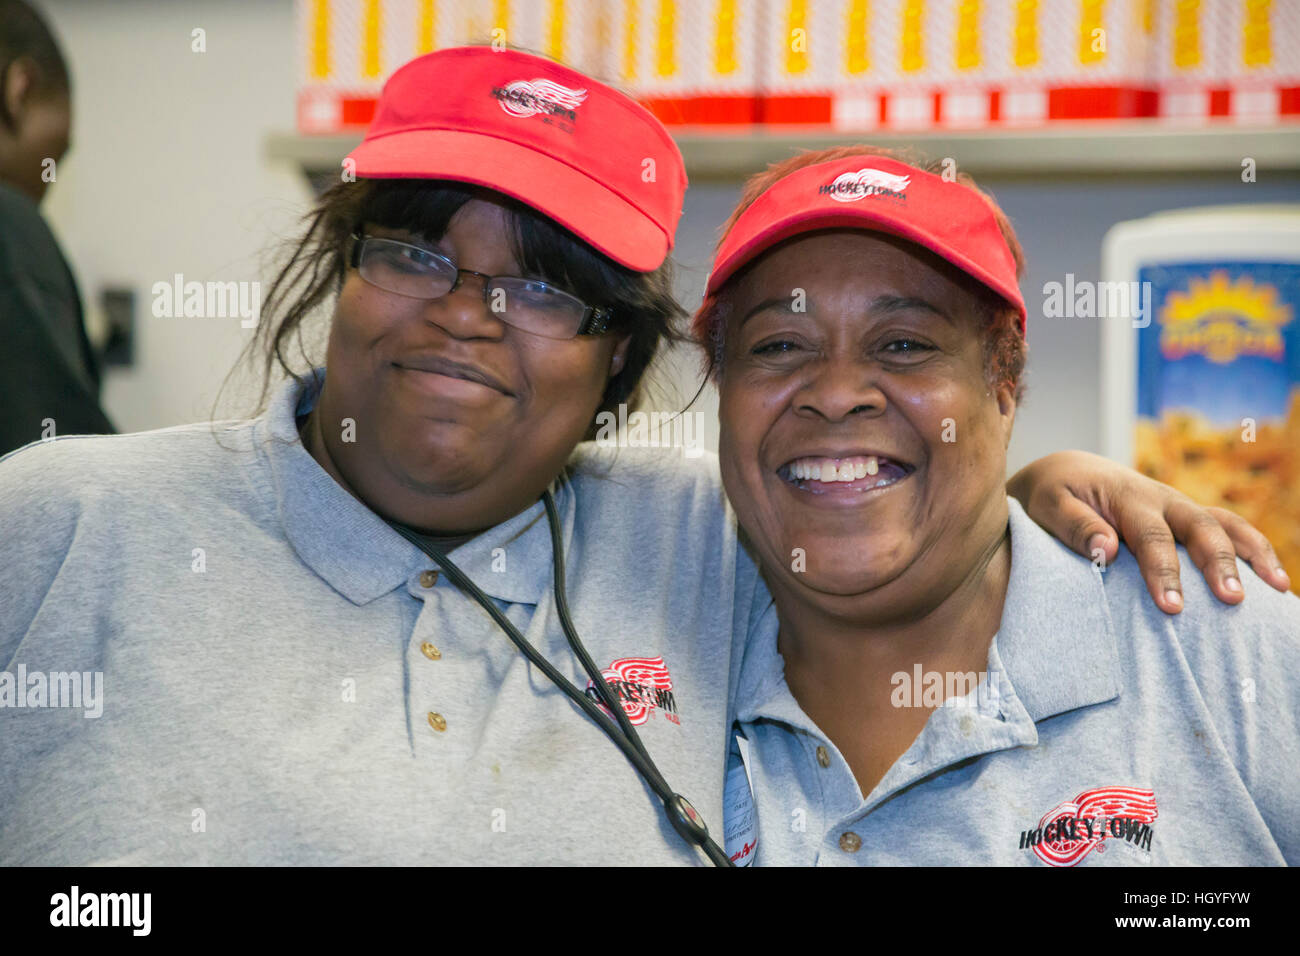 Detroit, Michigan - zwei Arbeiter Pose für ein Bild in einem Fast-Food-Restaurant in der Joe Louis Arena. Stockfoto